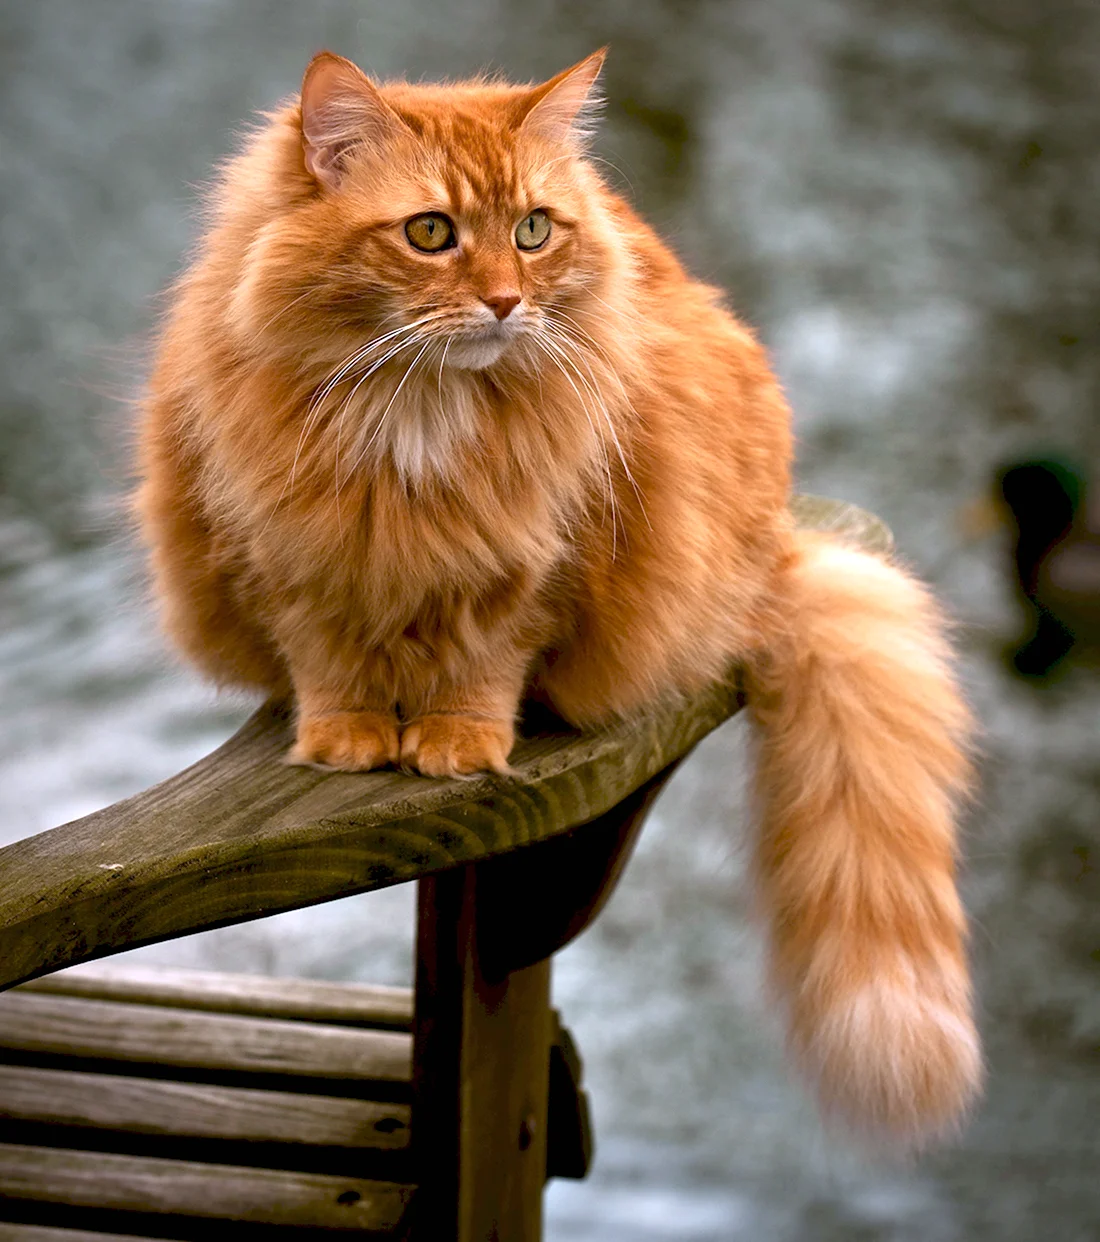 Европейская длинношерстная кошка рыжая. Рыжий длинношерстный Сибирский кот. Британская длинношёрстная кошка рыжая. Сибирская кошка рыжая длинношерстная. Порода кошек с рыжей шерстью